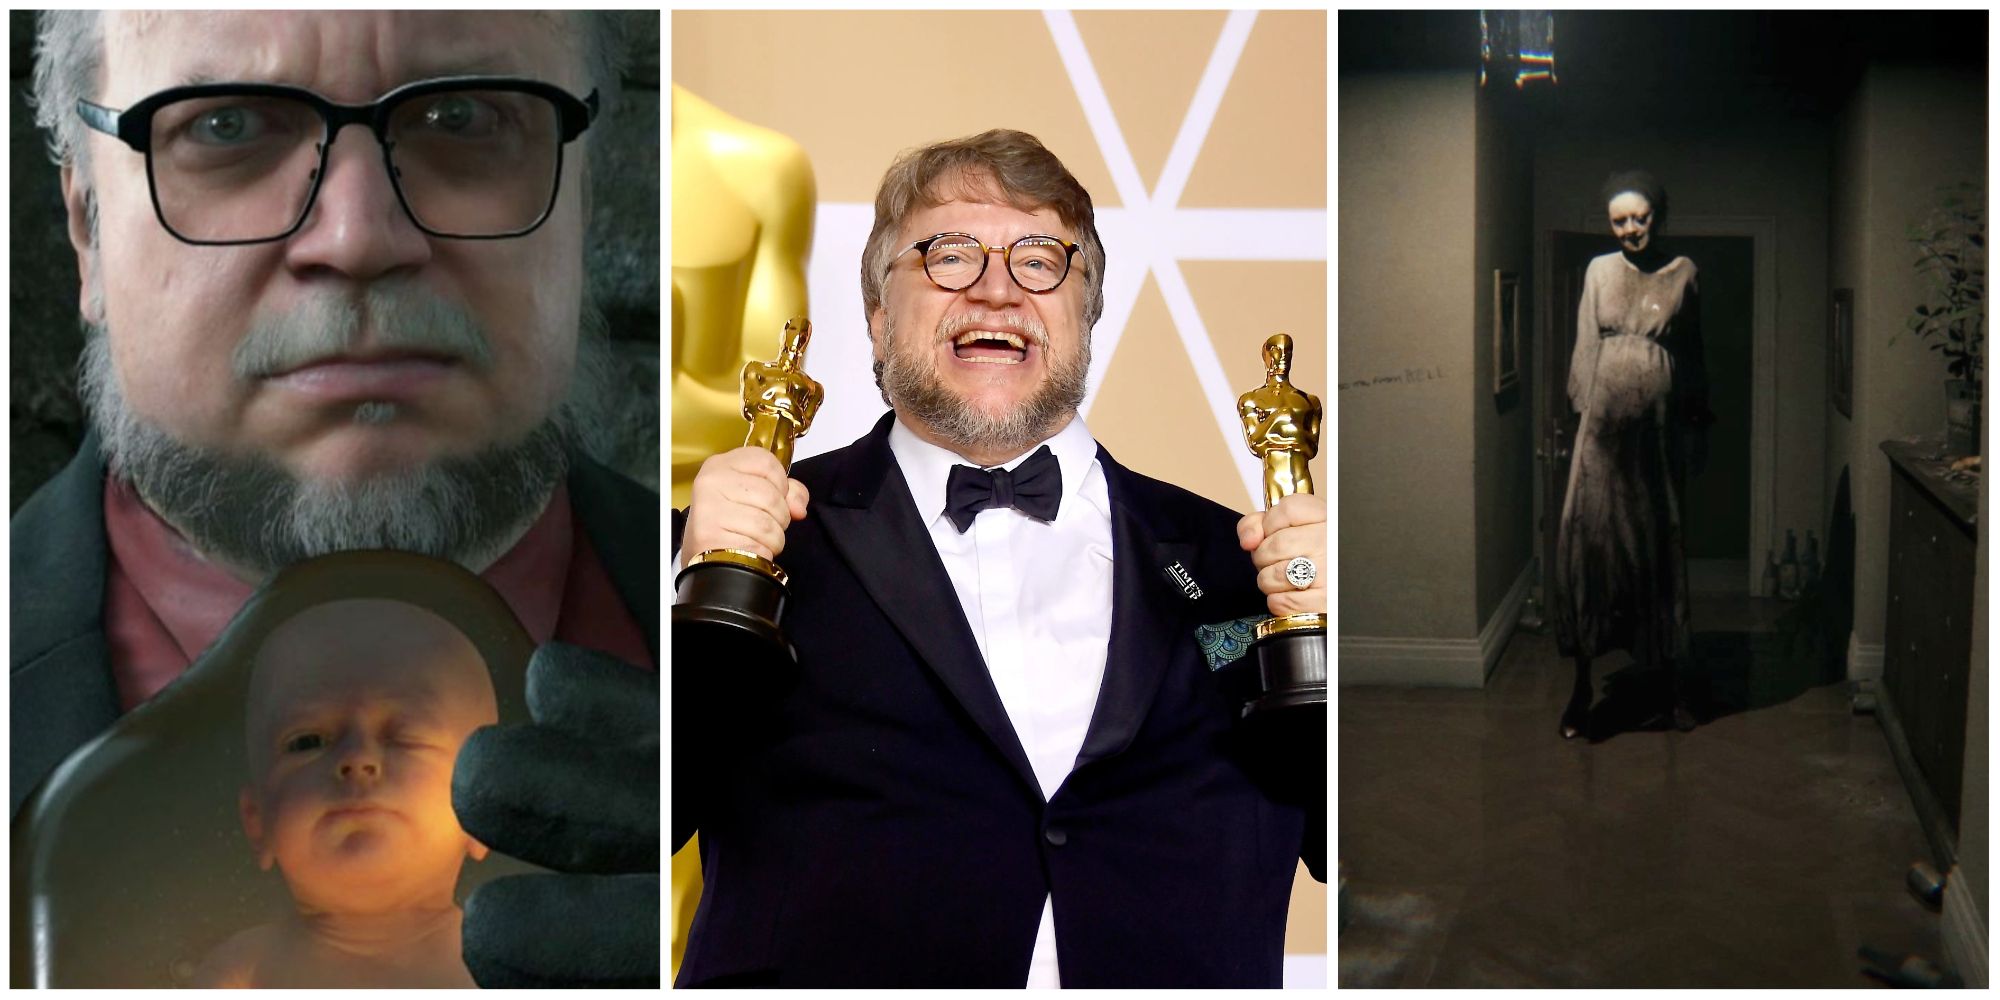 Guillermo Del Toro Death Stranding, Guillermo Del Toro Oscars, P.T Gameplay